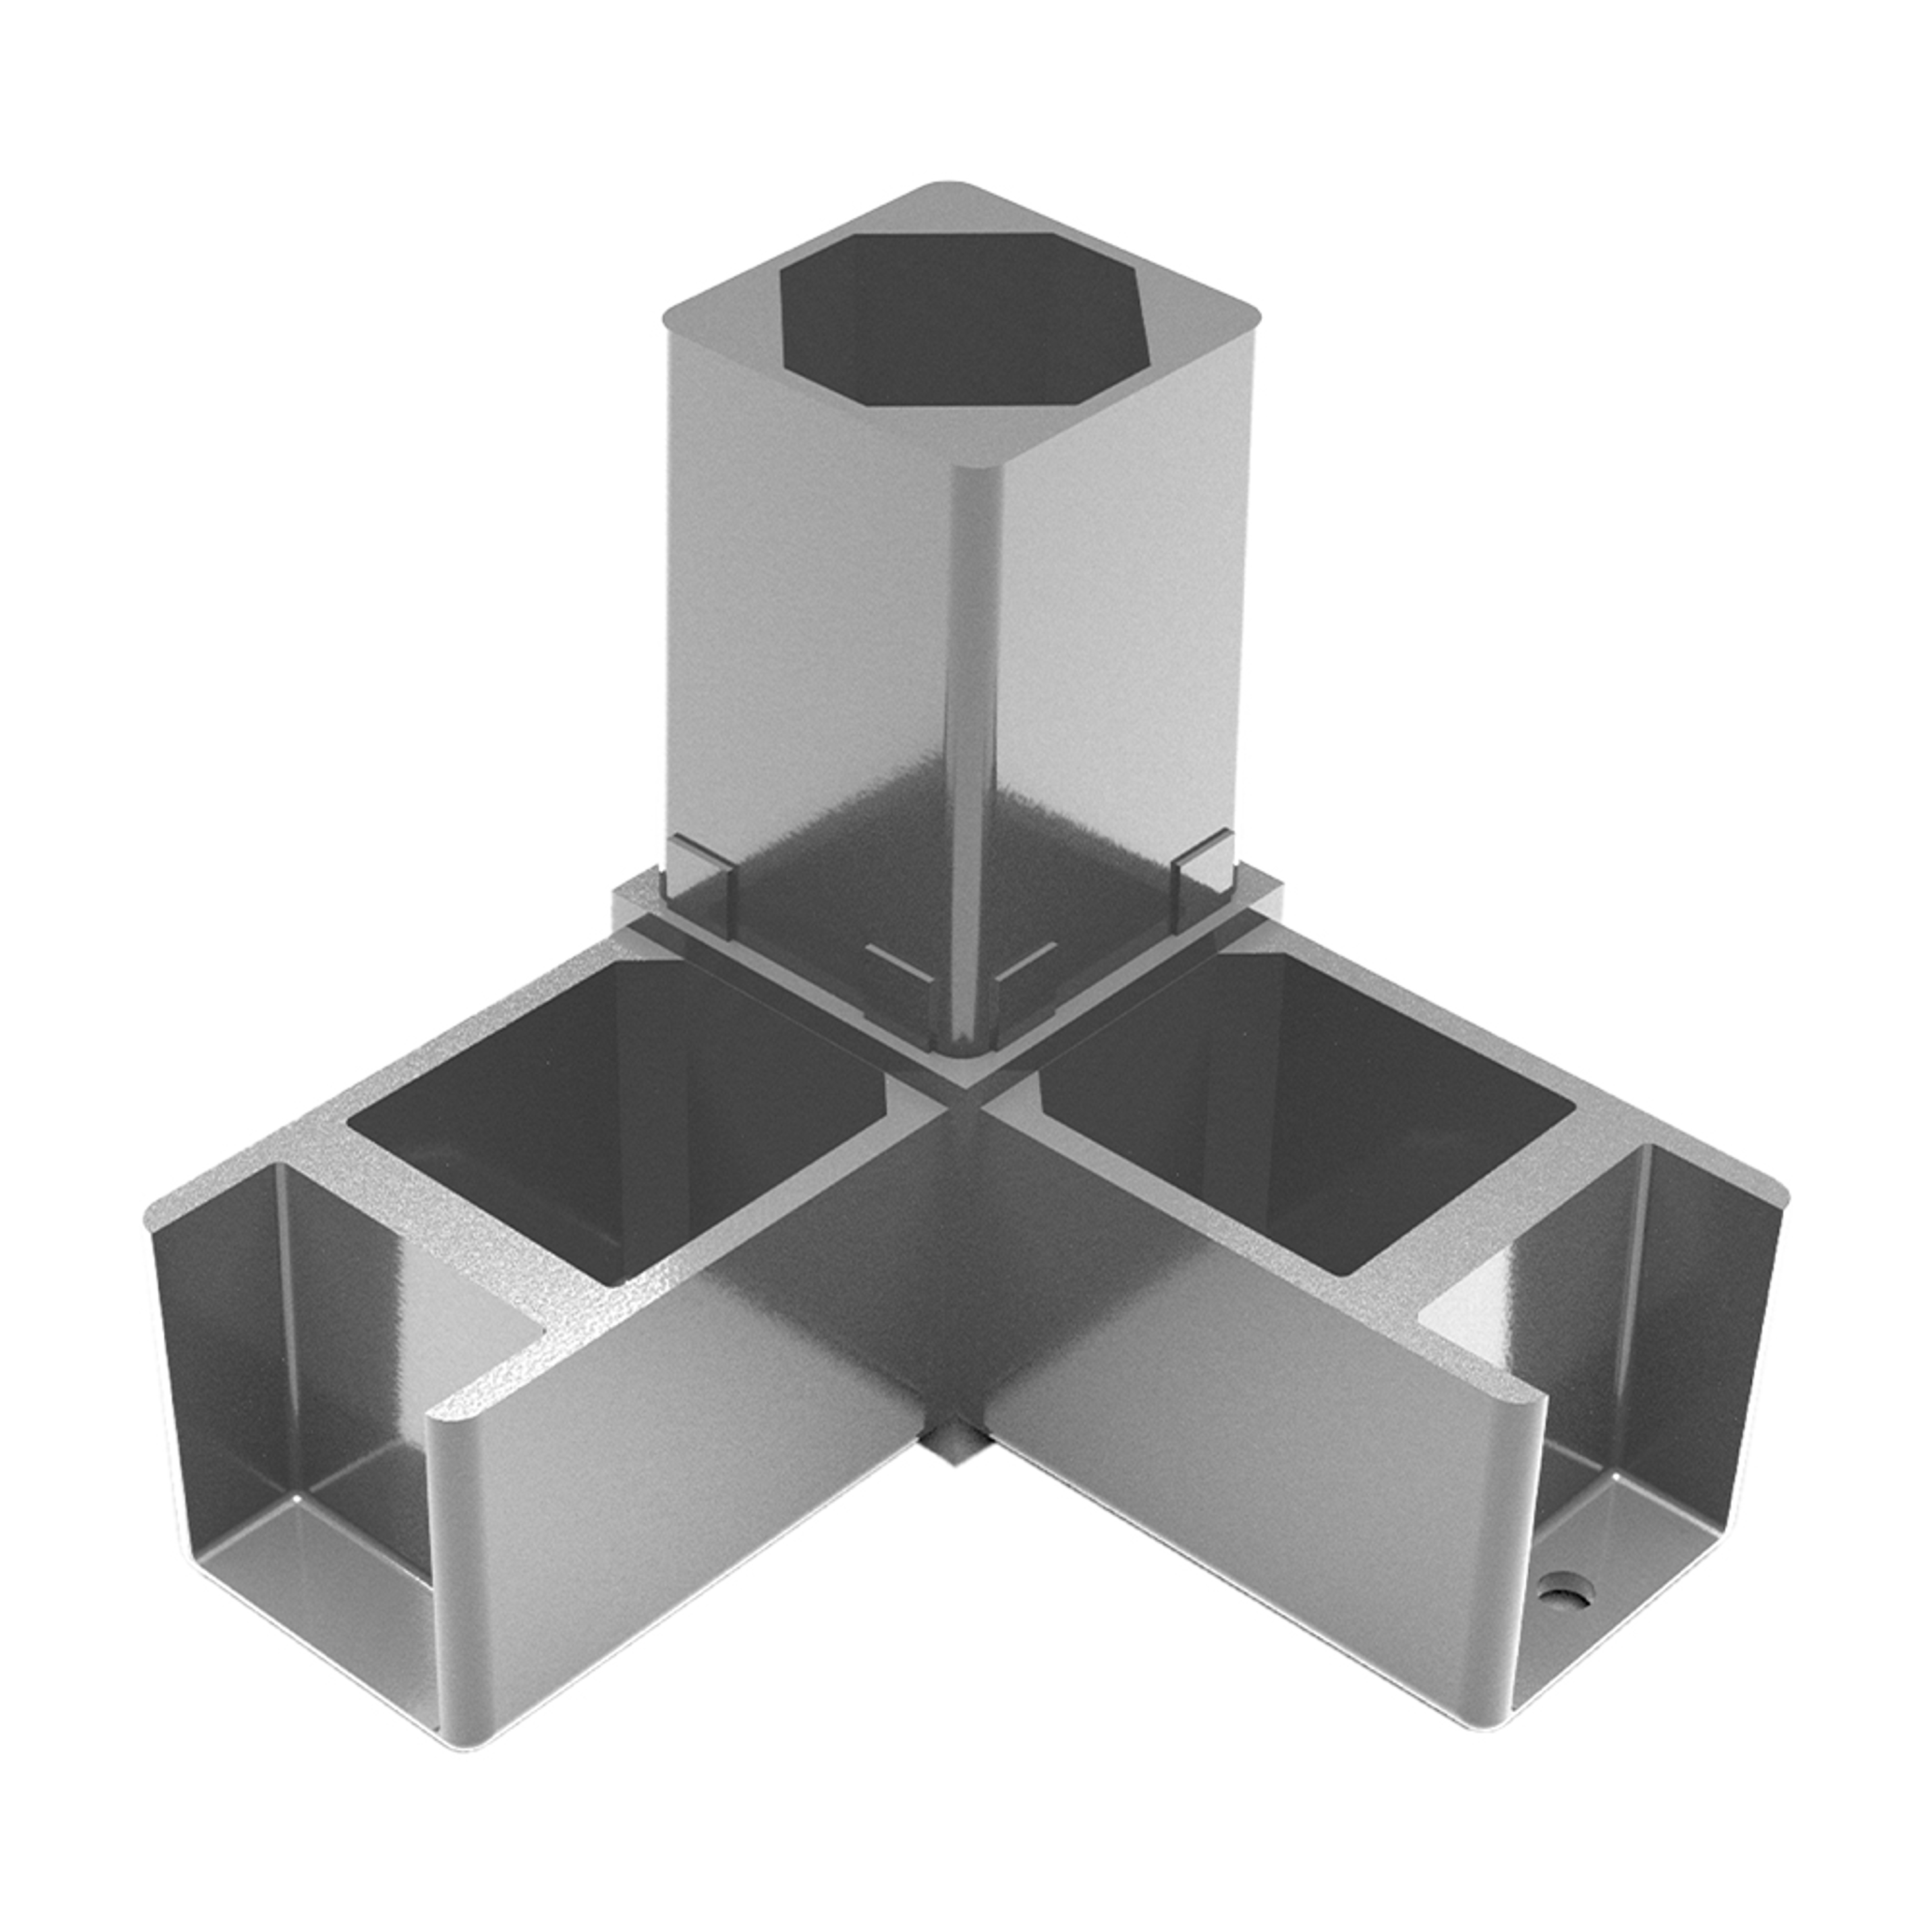 A0004 - 40x40 mm Aluminum Corner